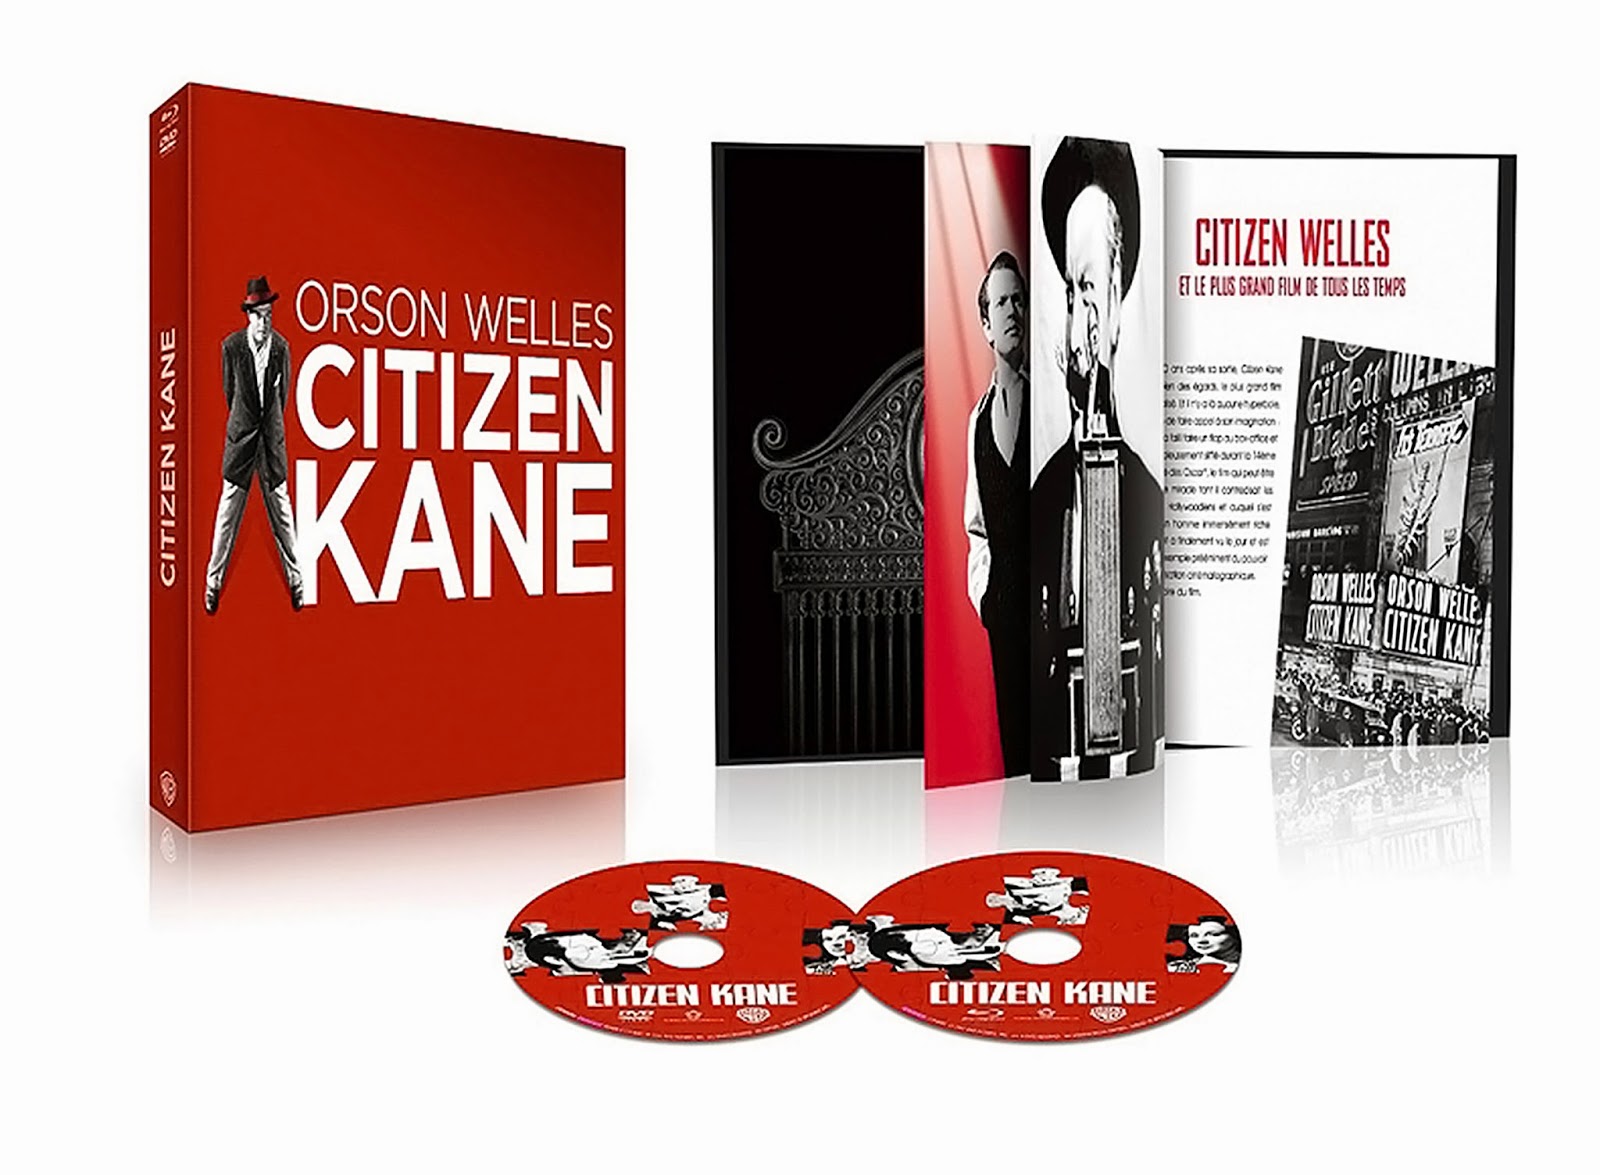 TCM Cinéma - Visuel Concours 4 CITIZEN KANE Cycle Orson Welles - Go with the Blog